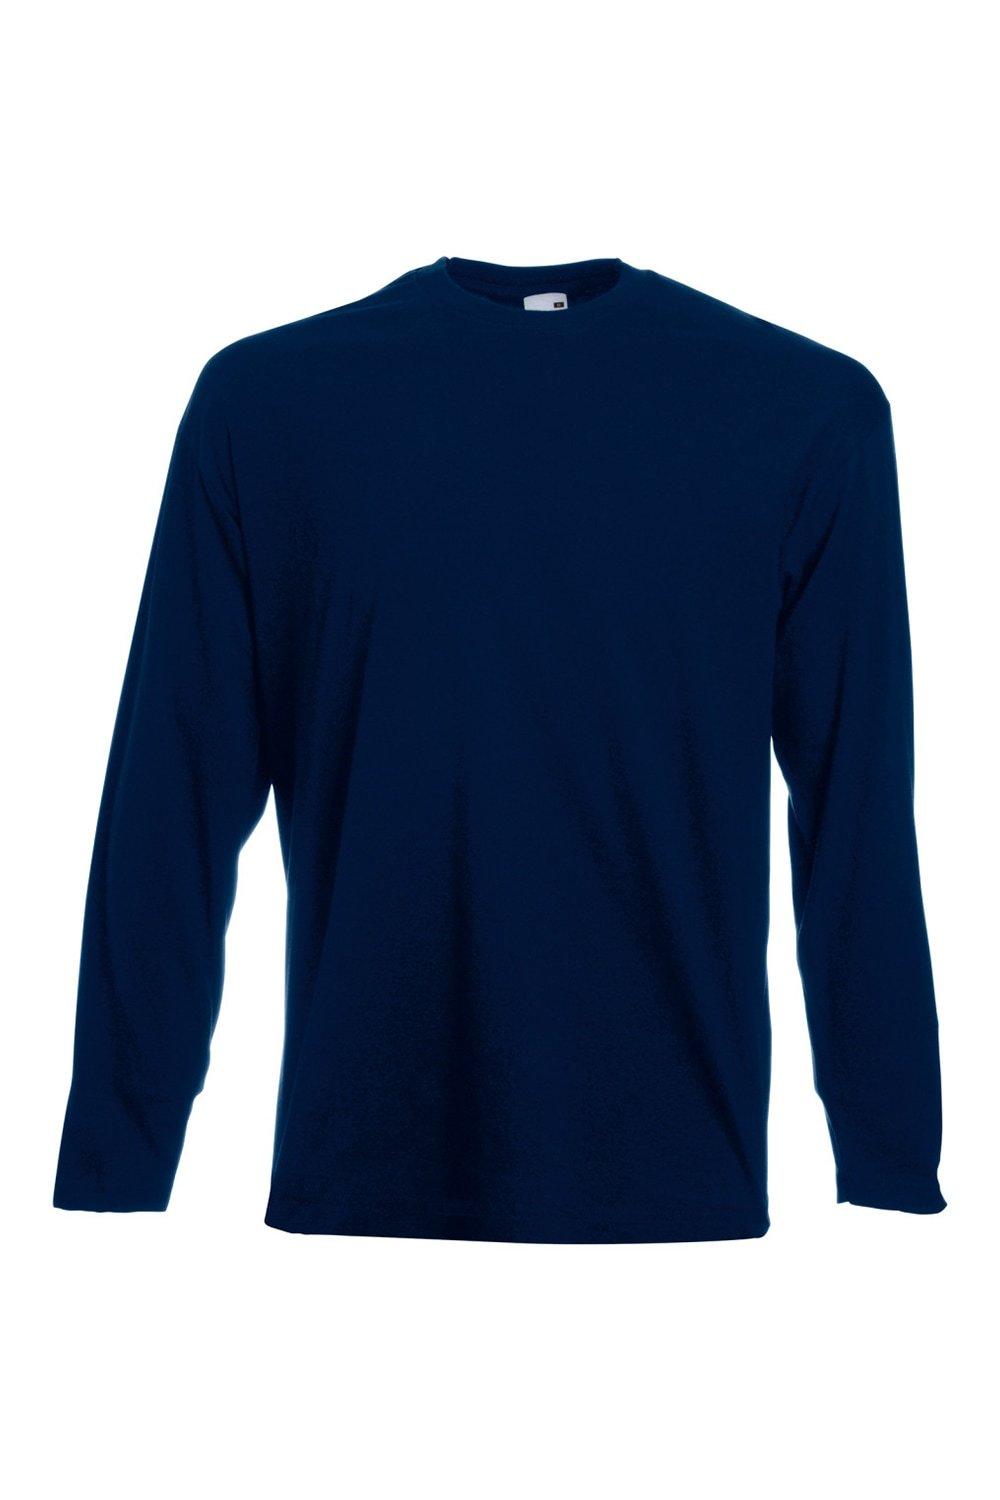 Повседневная футболка Value с длинным рукавом Universal Textiles, синий мужская футболка ретро кассета 2xl серый меланж